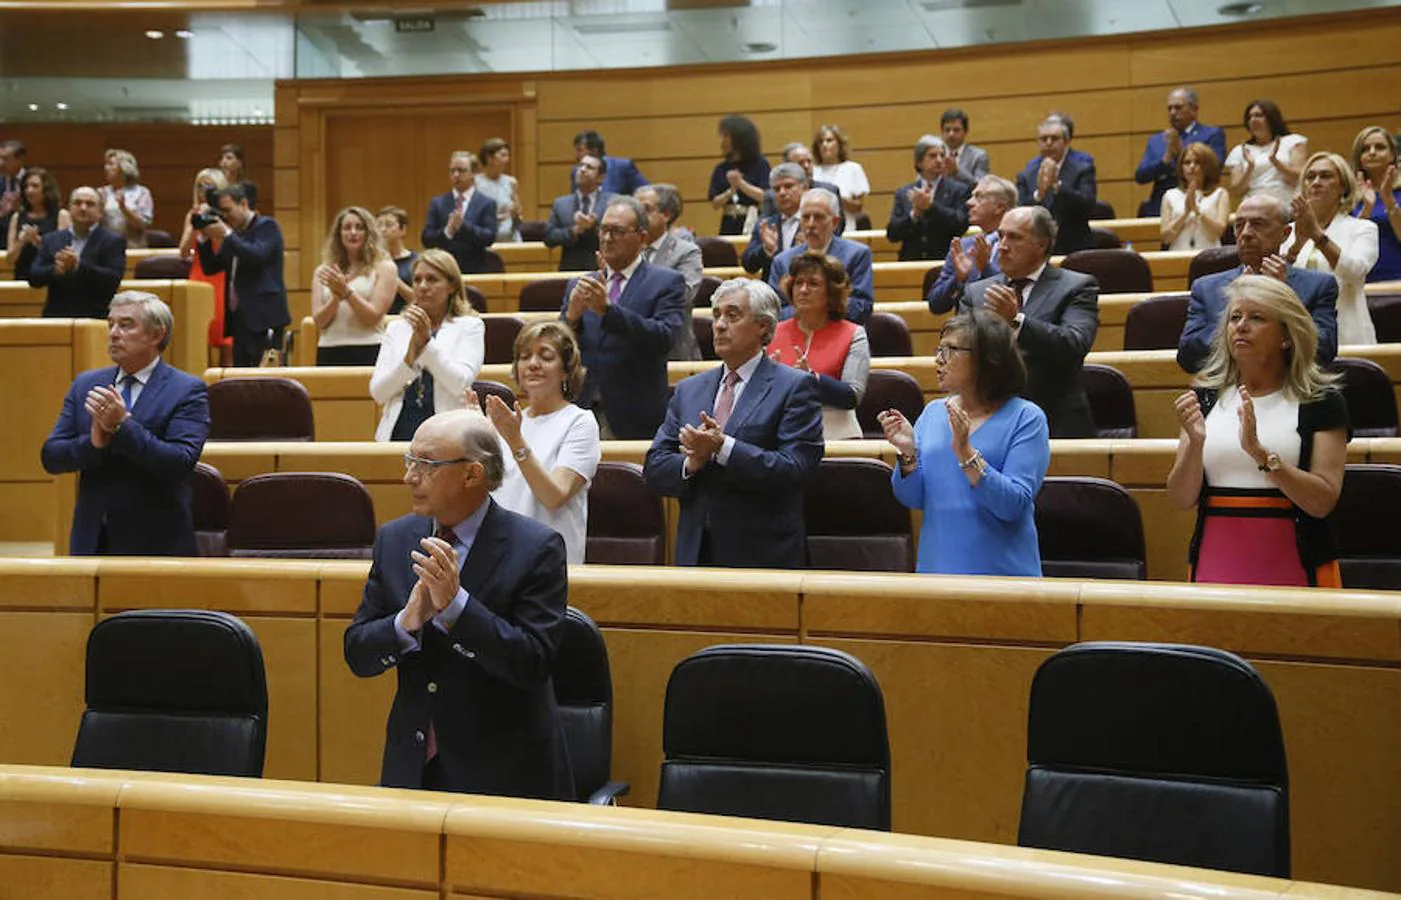 Minuto de silencio en el Senado en memoria de Miguel Ángel Blanco. Hoy se debate y vota el Acuerdo de objetivos de déficit y deuda pública de 2018-2020 y el límite de gasto no financiero de 2018. 